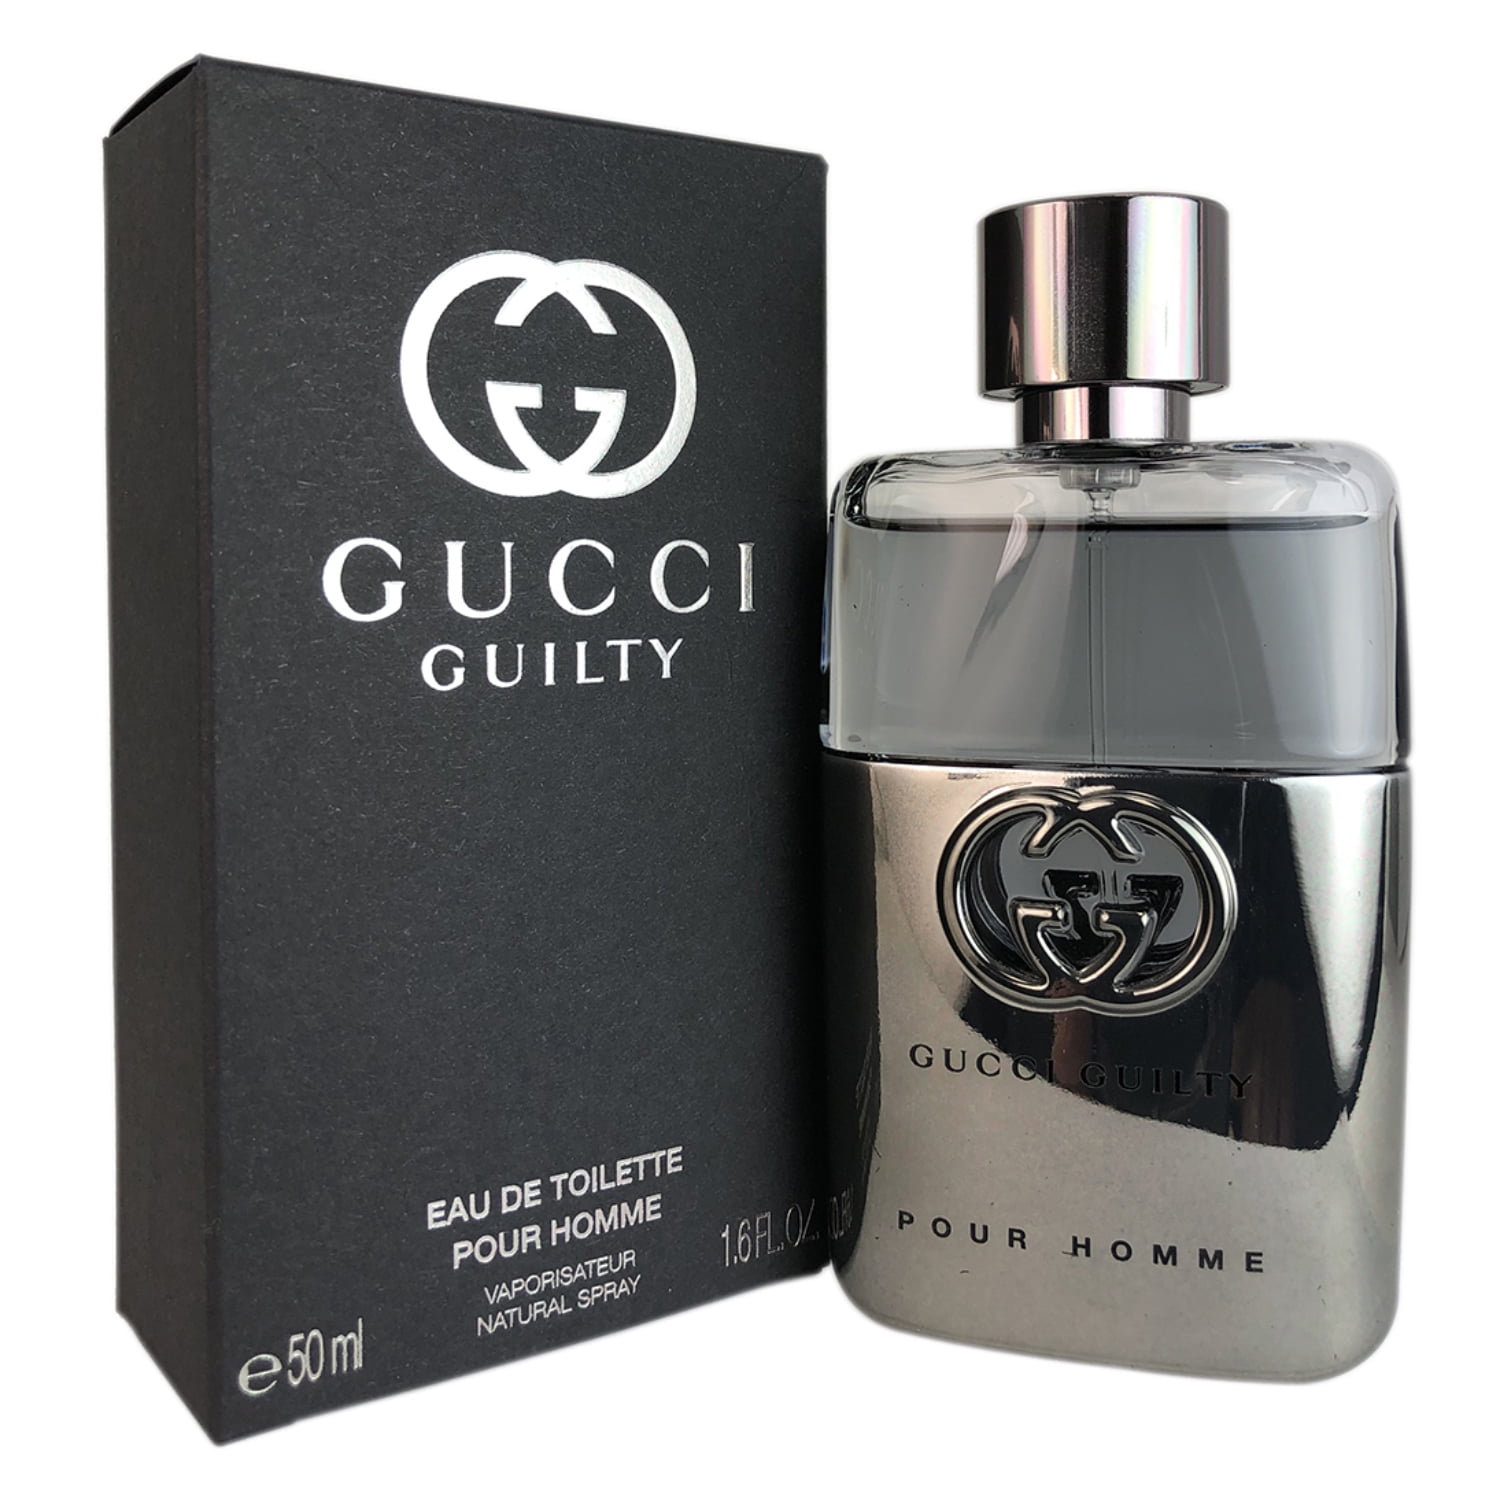 Gucci Guilty for Men 1.6 oz Eau de Toilette Spray - Walmart.com